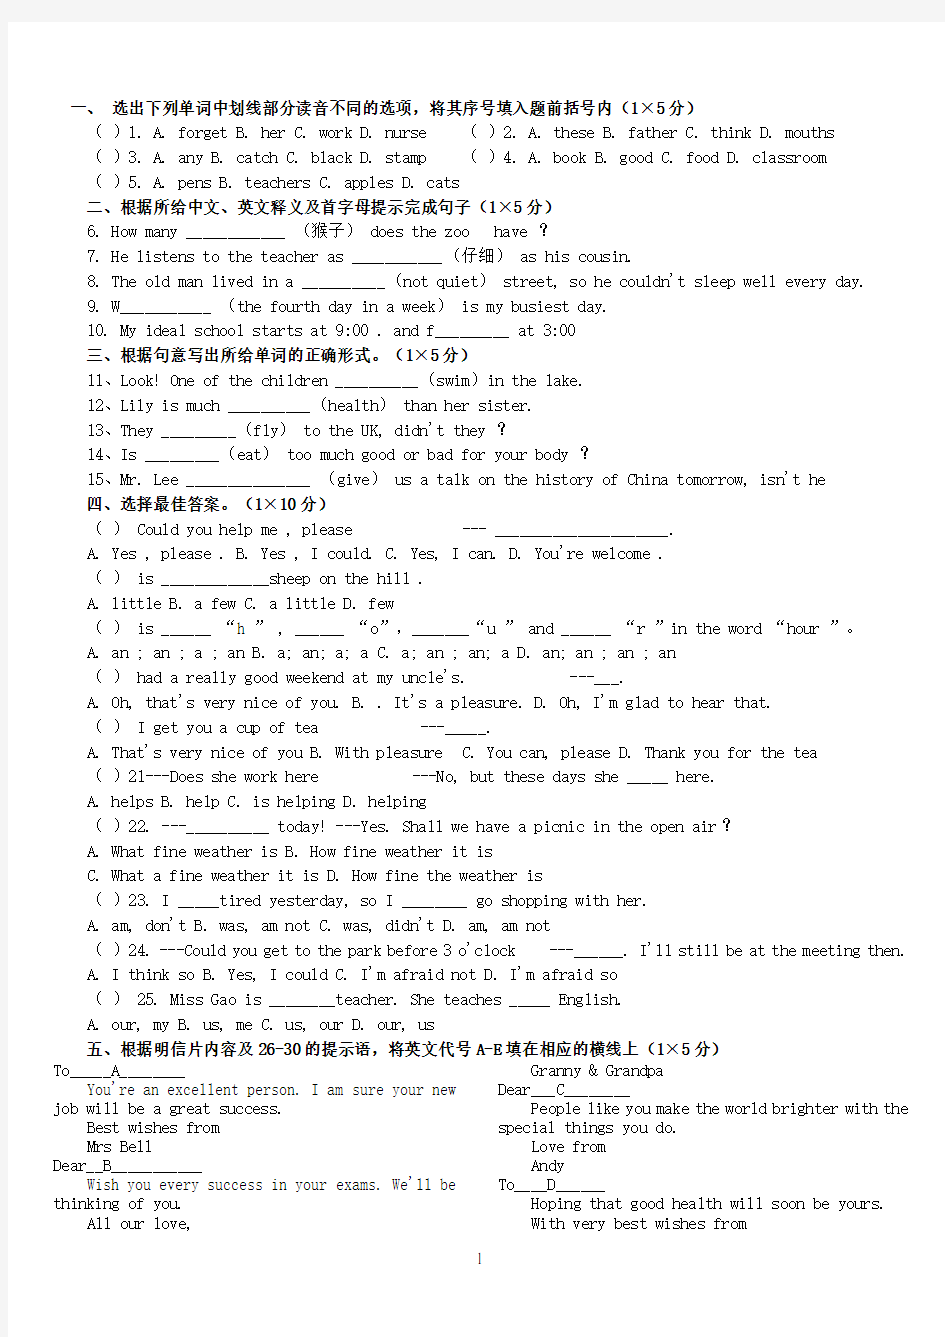 郑州重要中学新初一分班考试英语试题